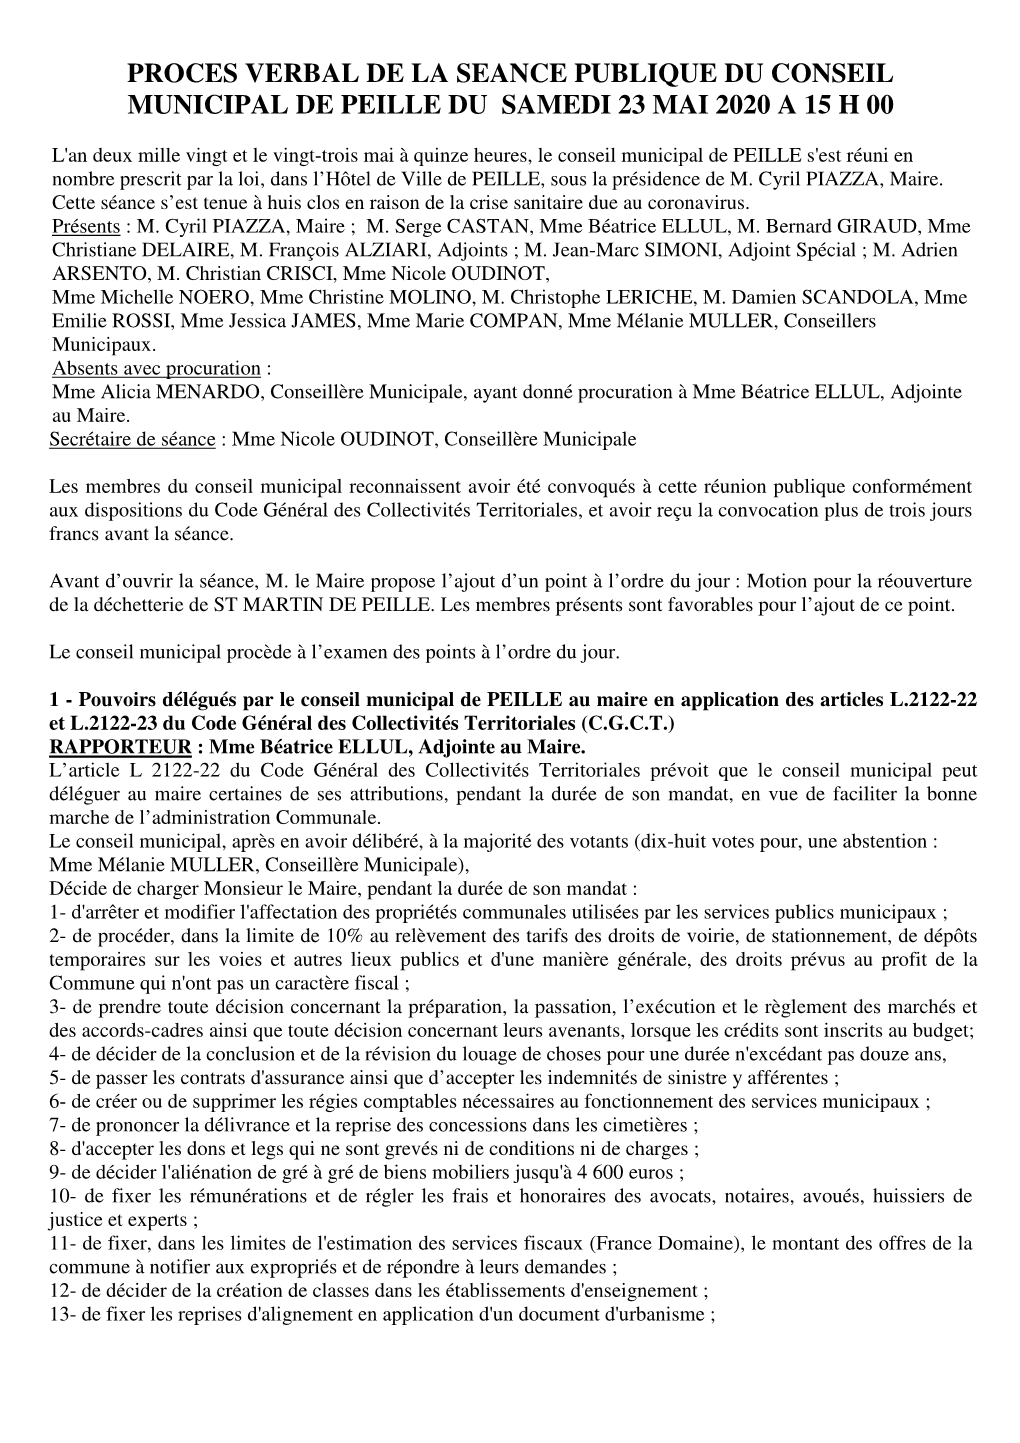 Proces Verbal De La Seance Publique Du Conseil Municipal De Peille Du Samedi 23 Mai 2020 a 15 H 00